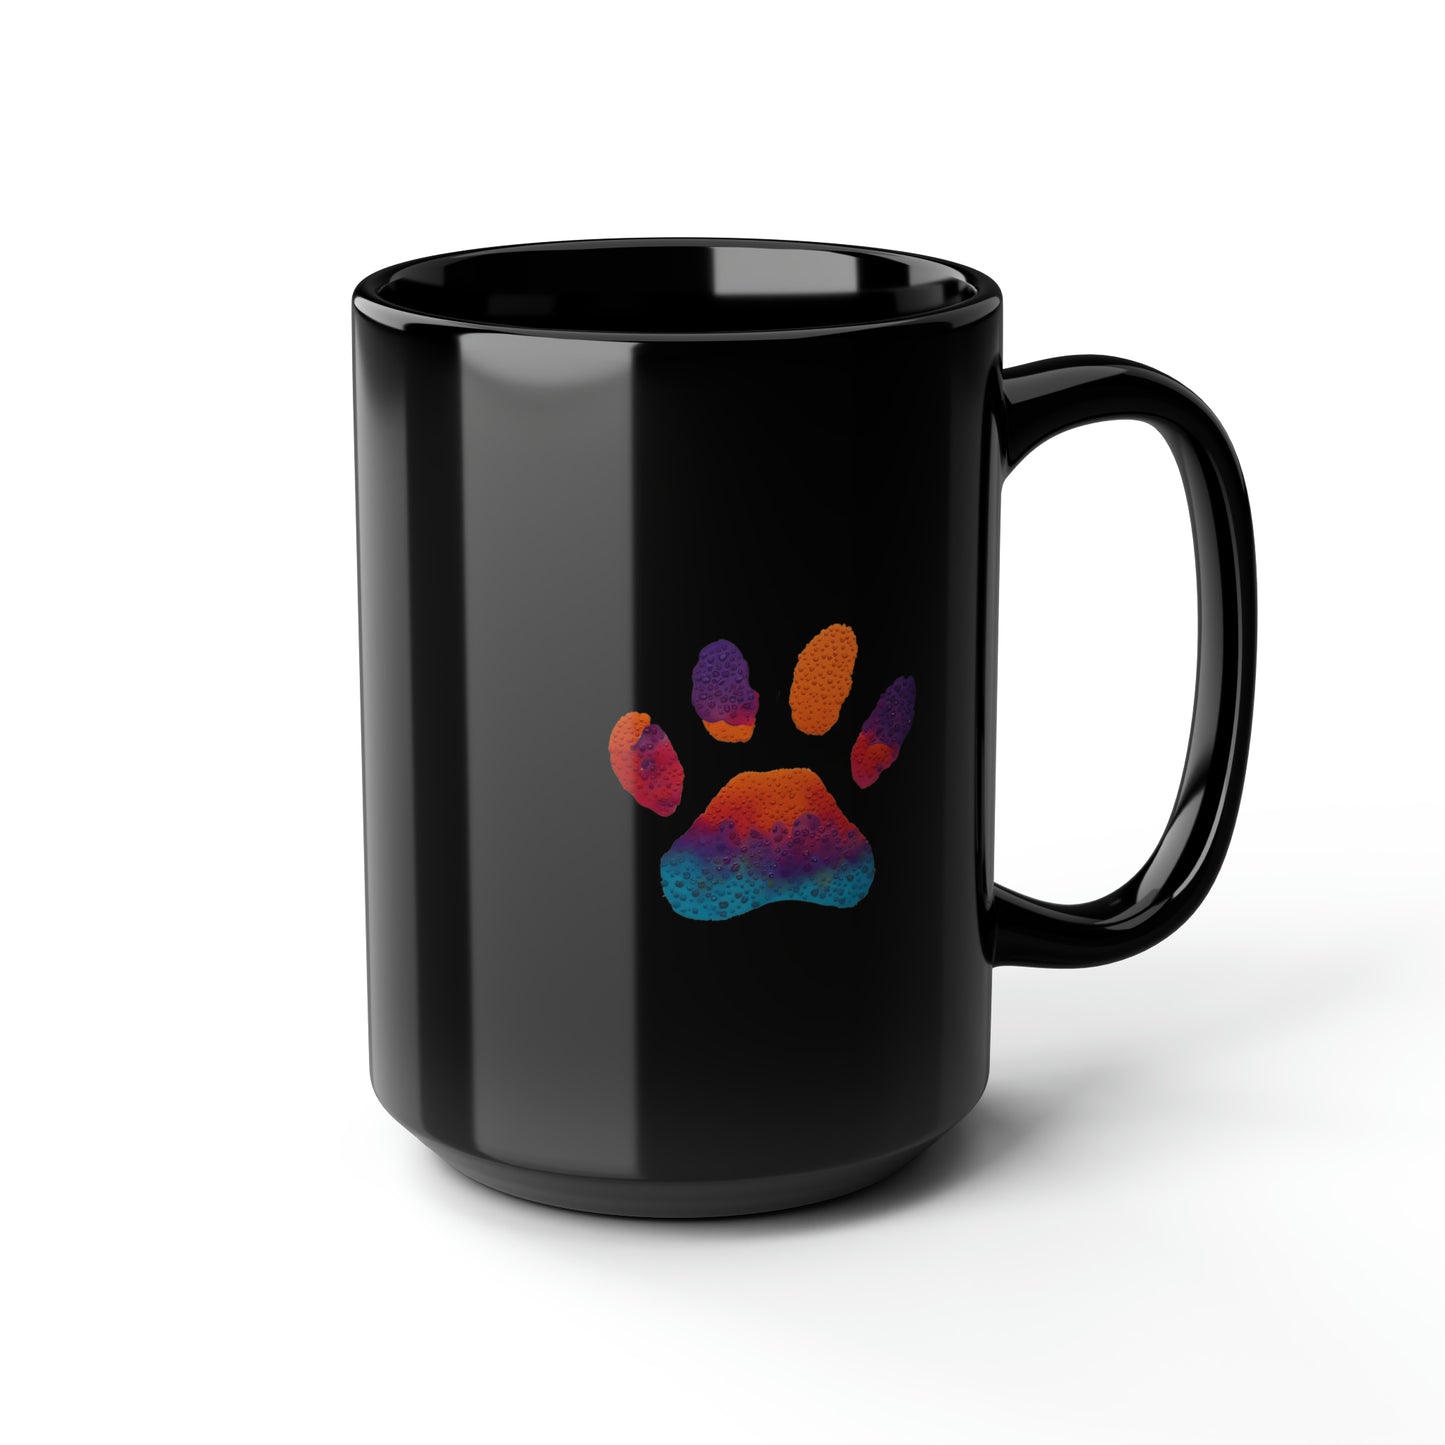 Paw Print Black Ceramic Coffee Mug, 15oz